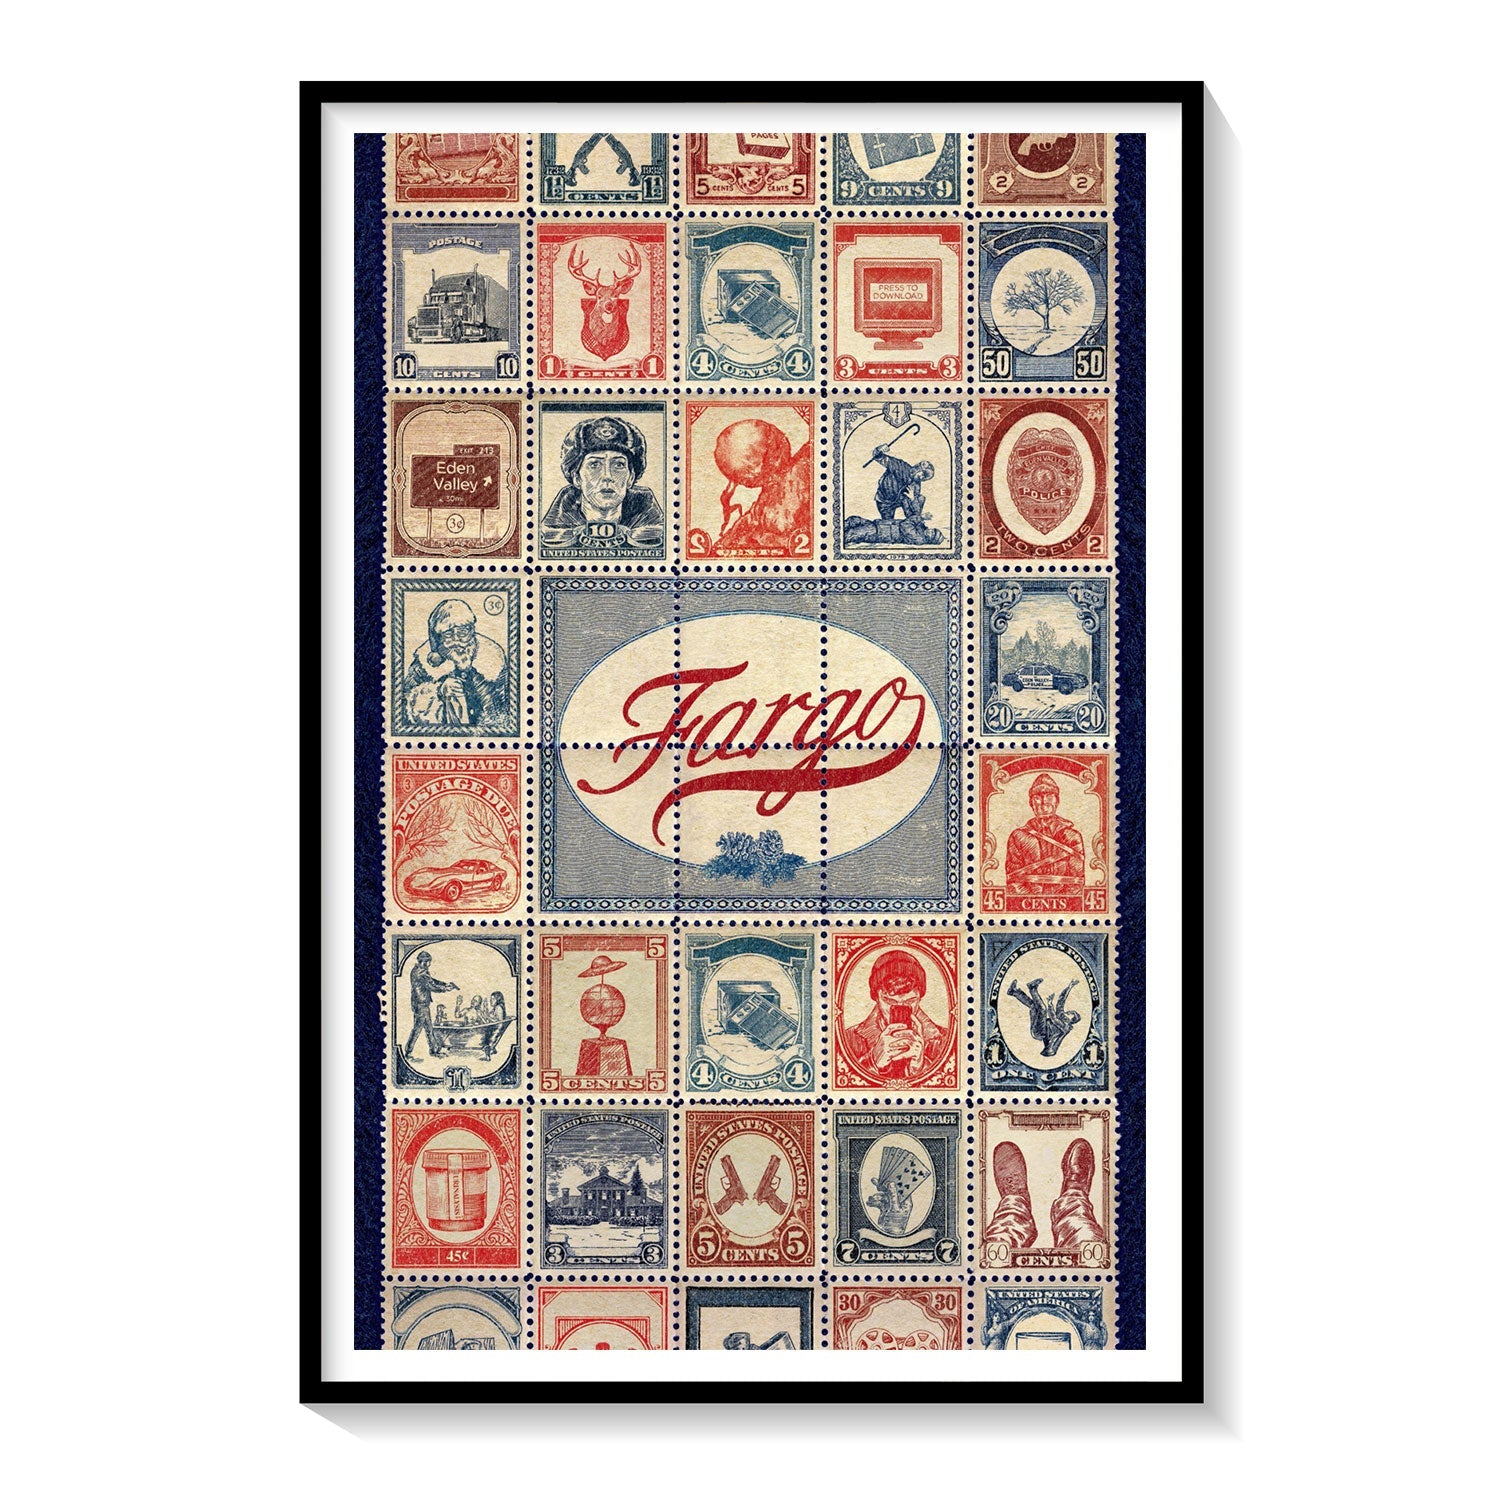 Distribuere Gætte ballade Fargo Old Movie Poster: Buy Movie Posters Online – Dessine Art